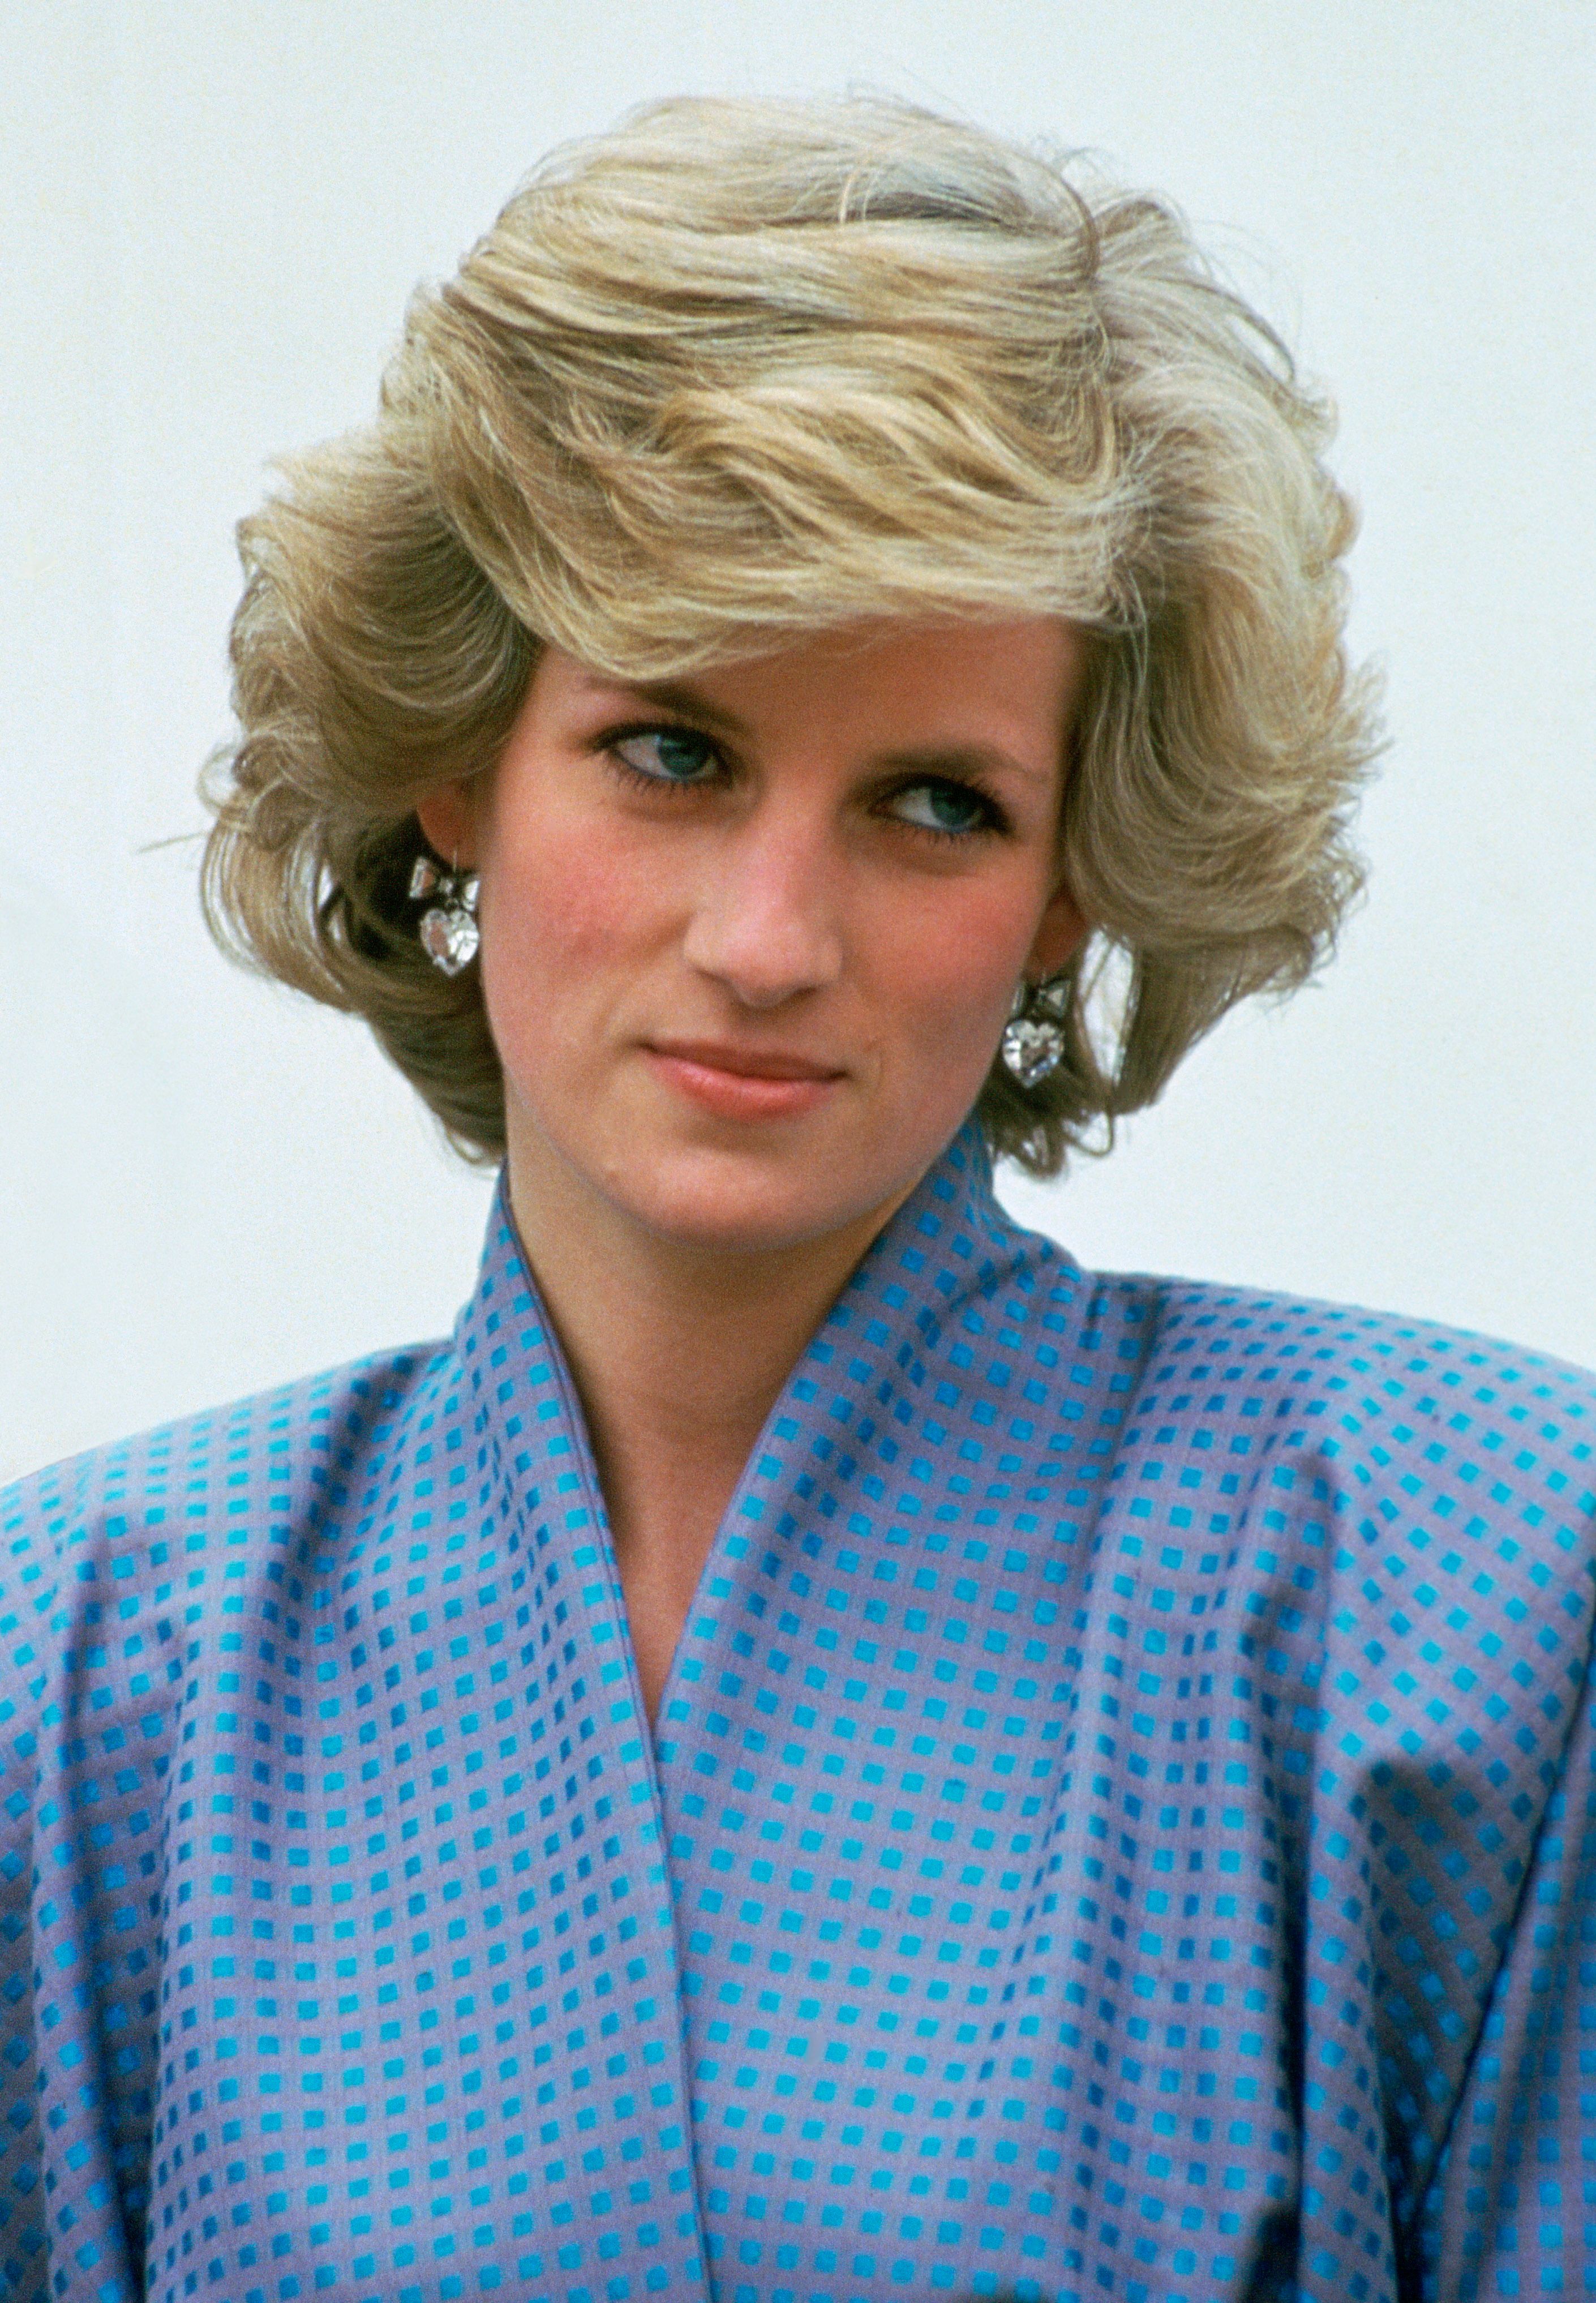 Prinzessin Diana bei einem offiziellen Auslandsbesuch in Italien am 22. April 1985 | Quelle: Getty Images